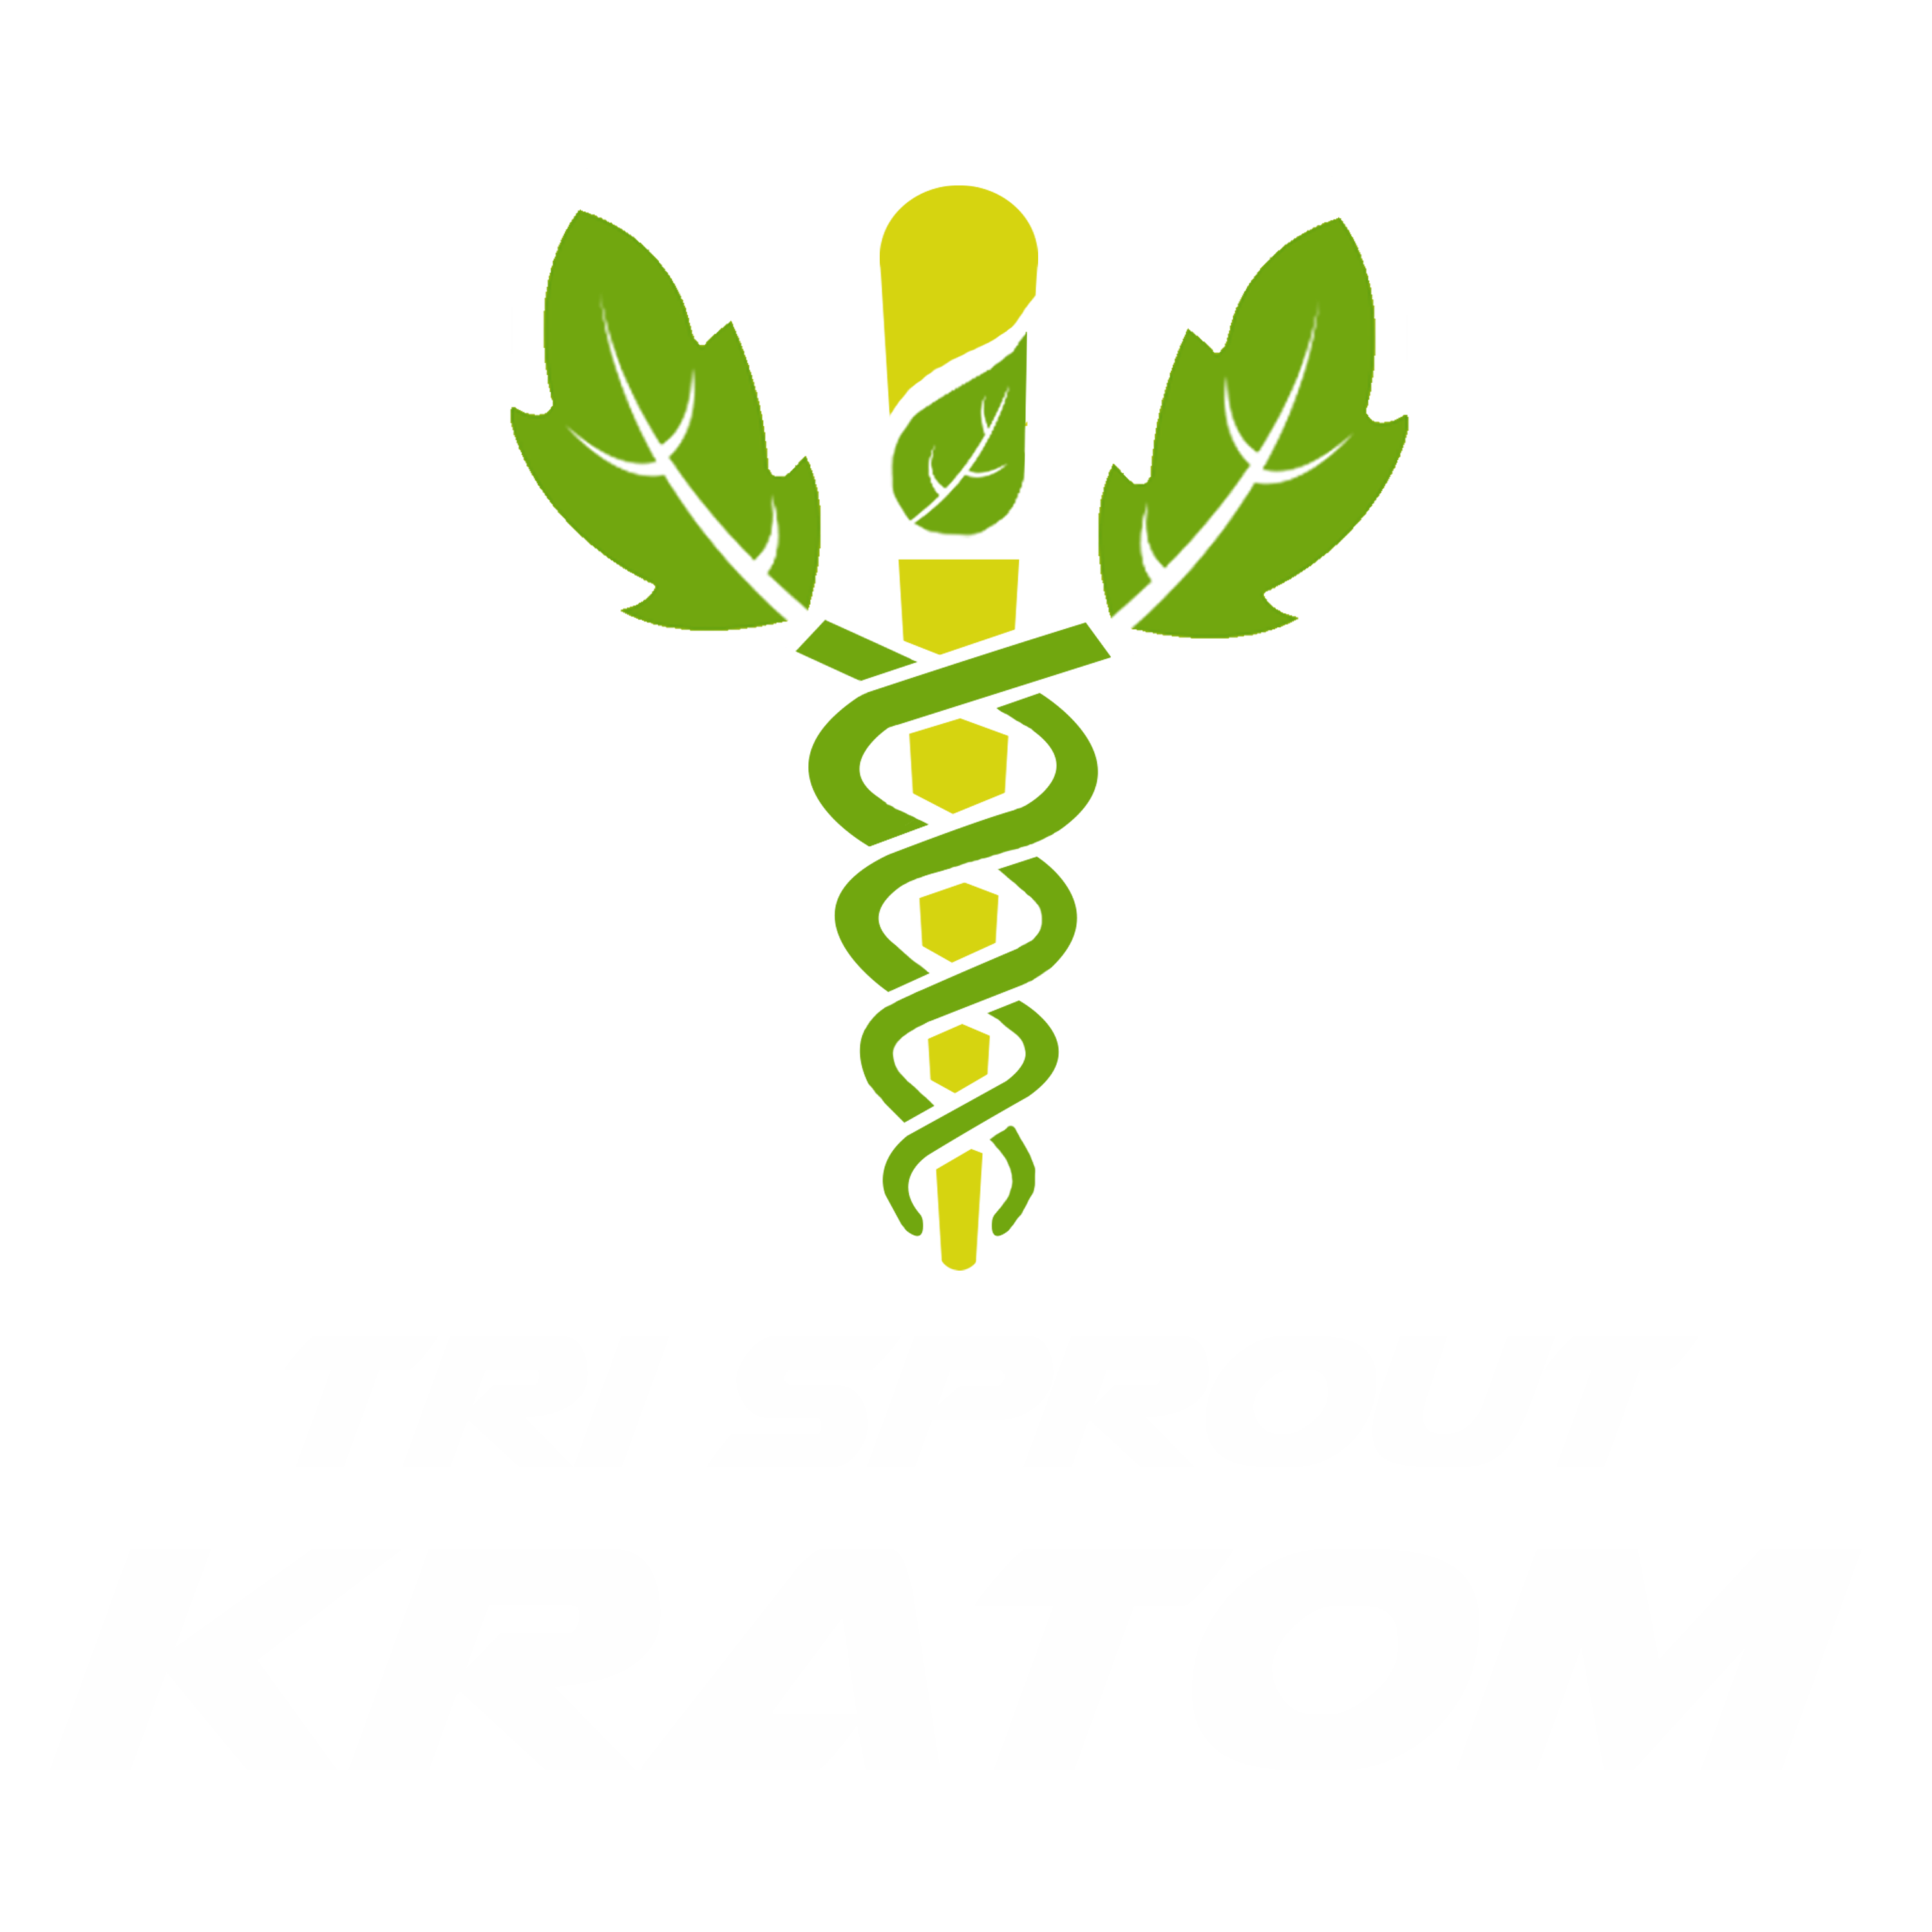 Tri Sprout Kratom - Shop For Kratom Online